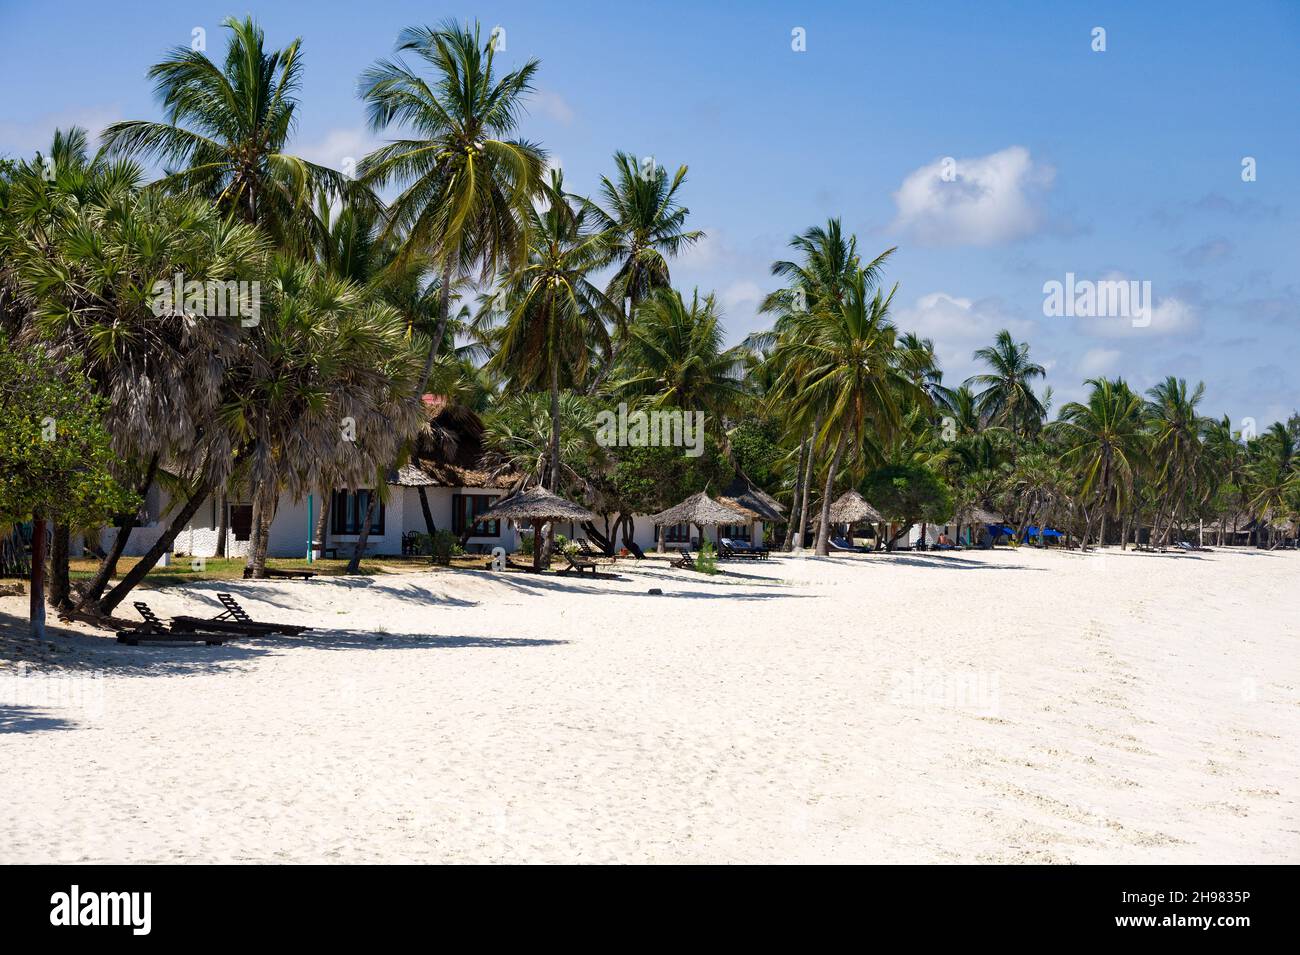 Beach Chalet tra palme presso la spiaggia in una giornata di sole, Diani, Kenya Foto Stock